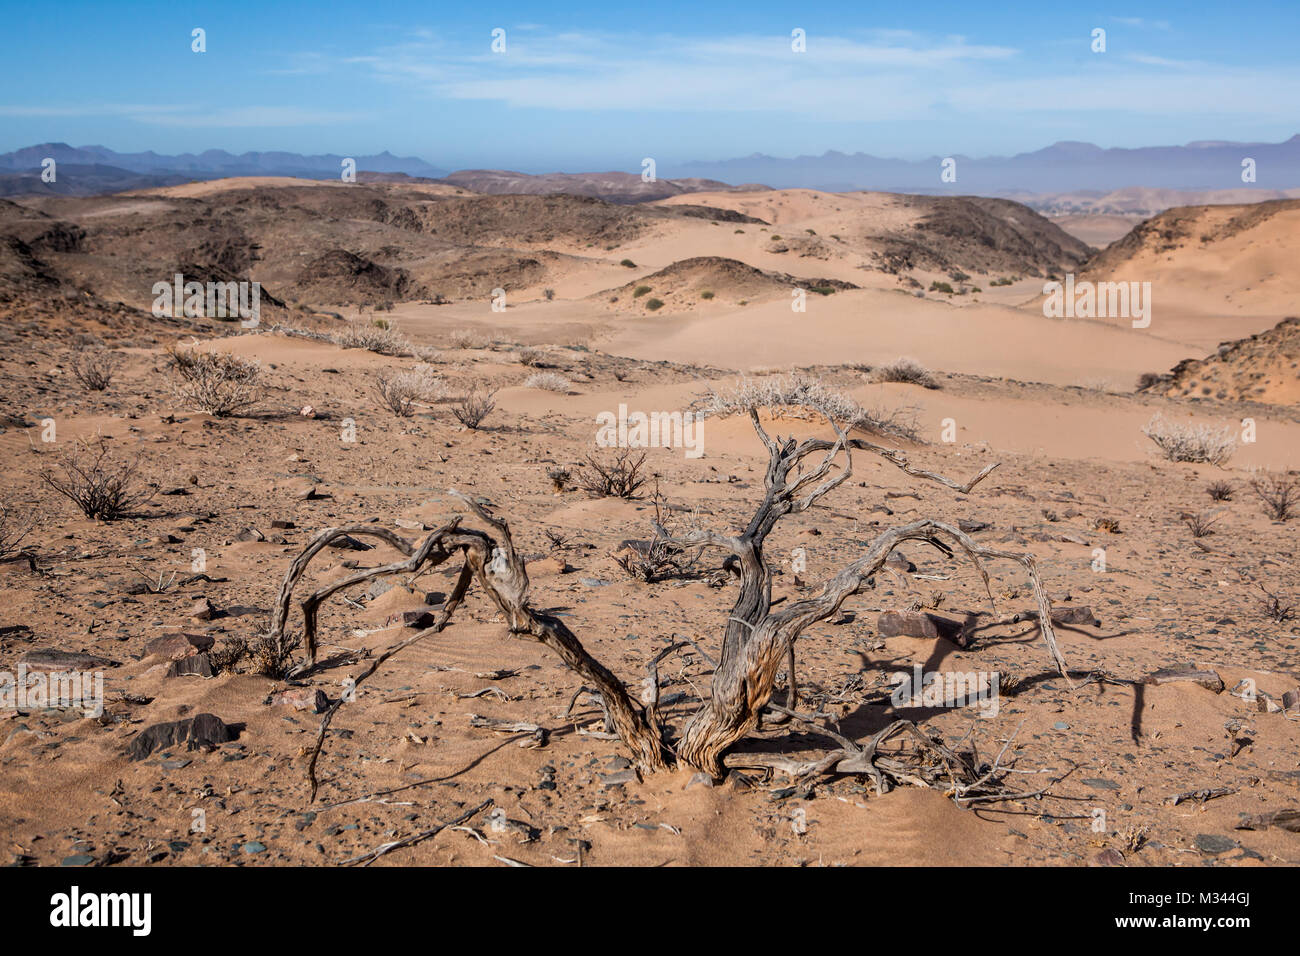 Desert landscape, Damaraland, Namibia Stock Photo